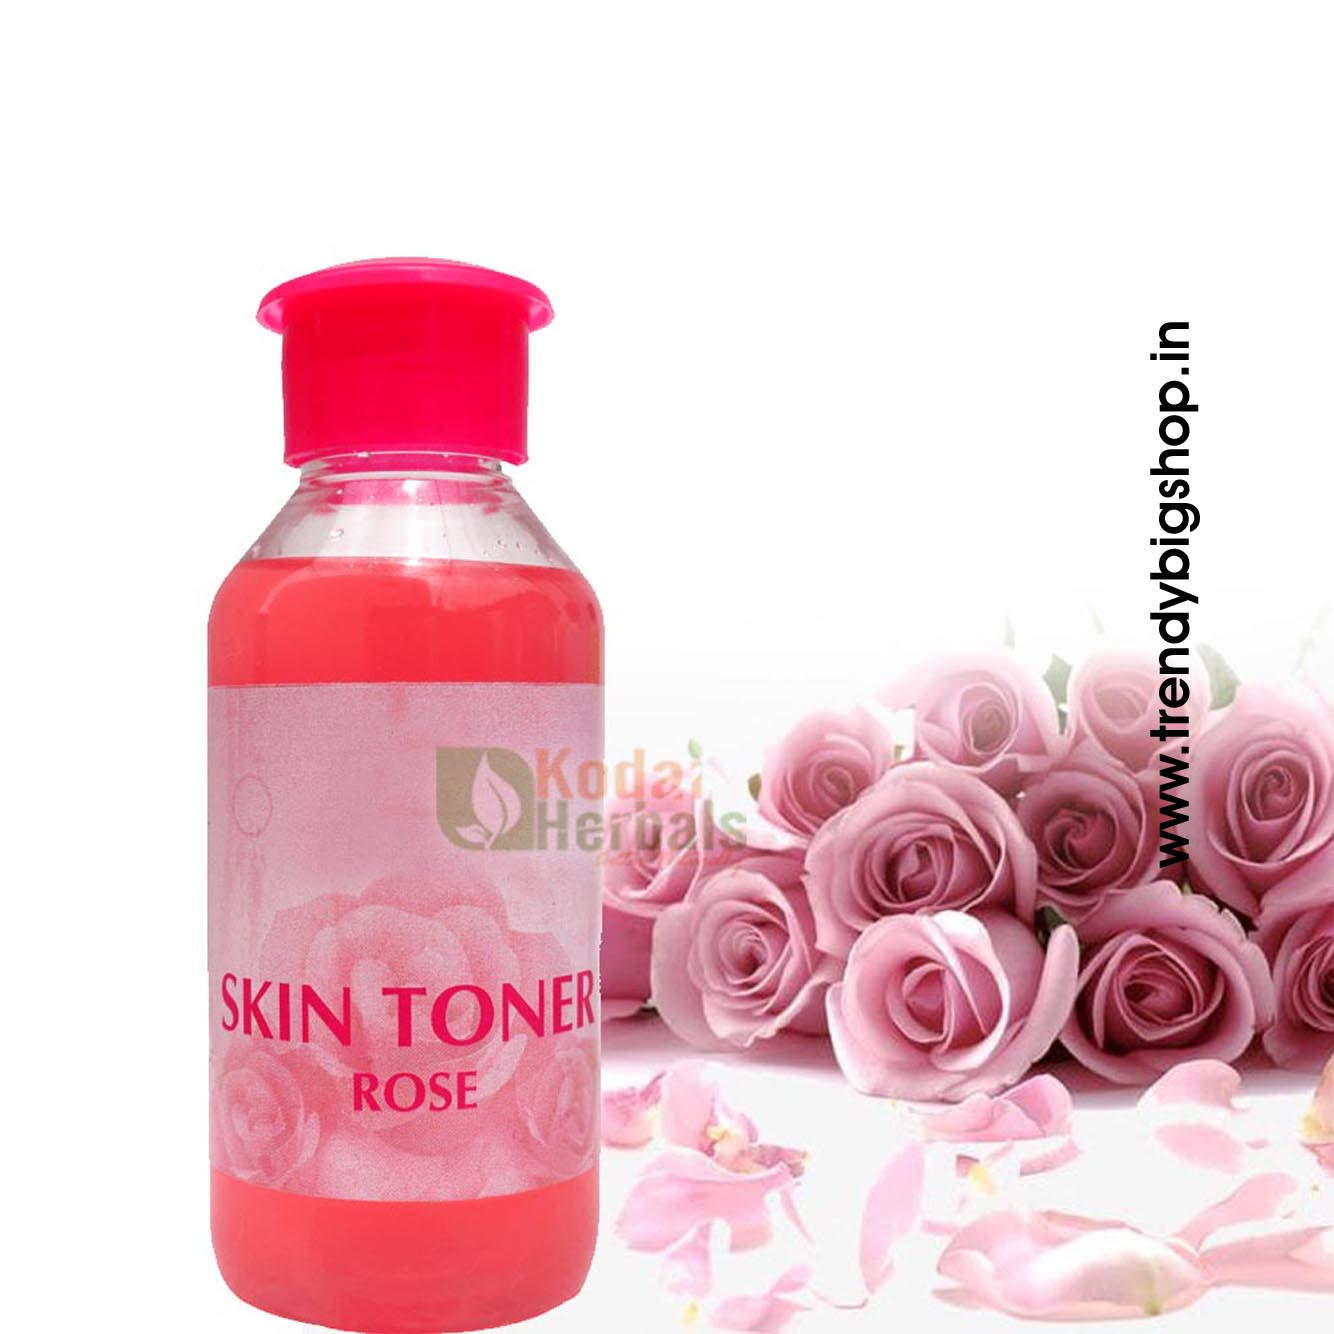 Rose Skin Toner, Organic Rose Skin Toner in online kodai, 200ml